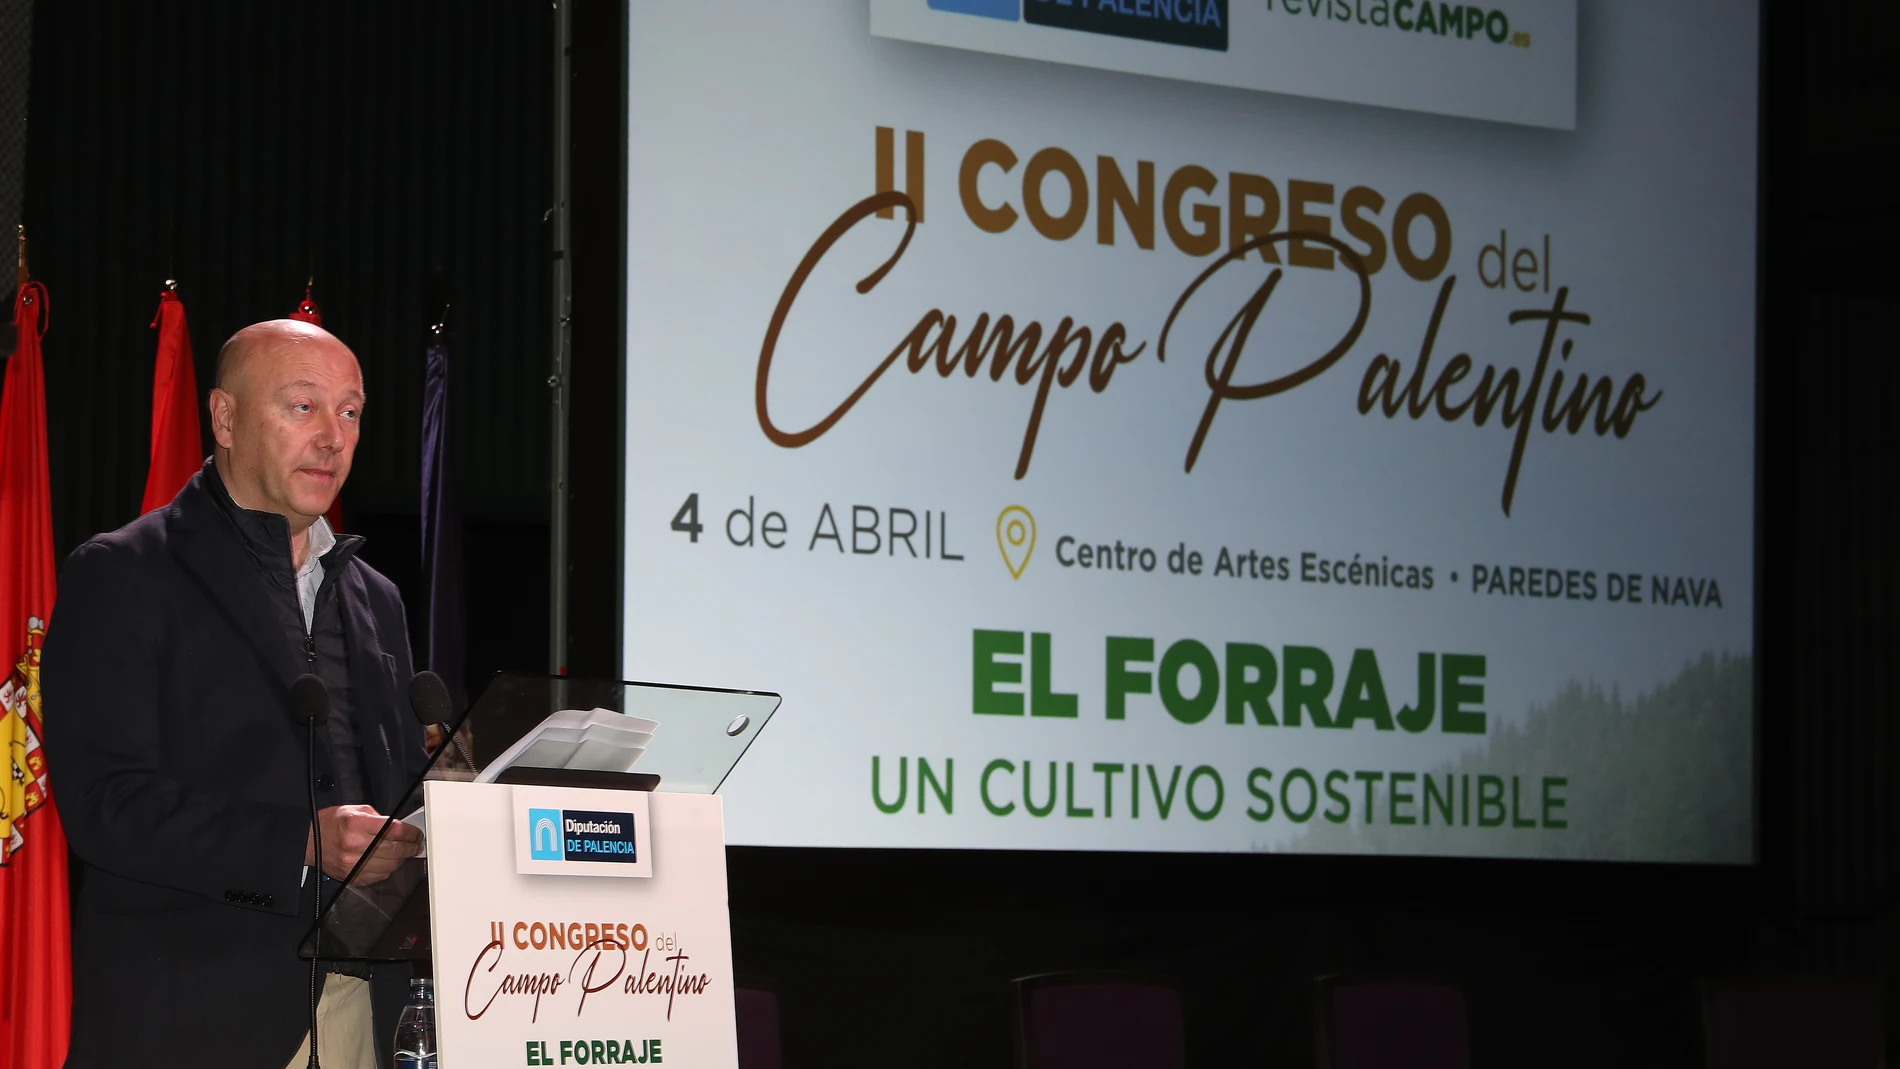 El alcalde Paredes de Nava; vicepresidente de la Diputacion; y responsable del área Agricultura y Desarrollo Rural, Luis Calderón, inaugura la jornada